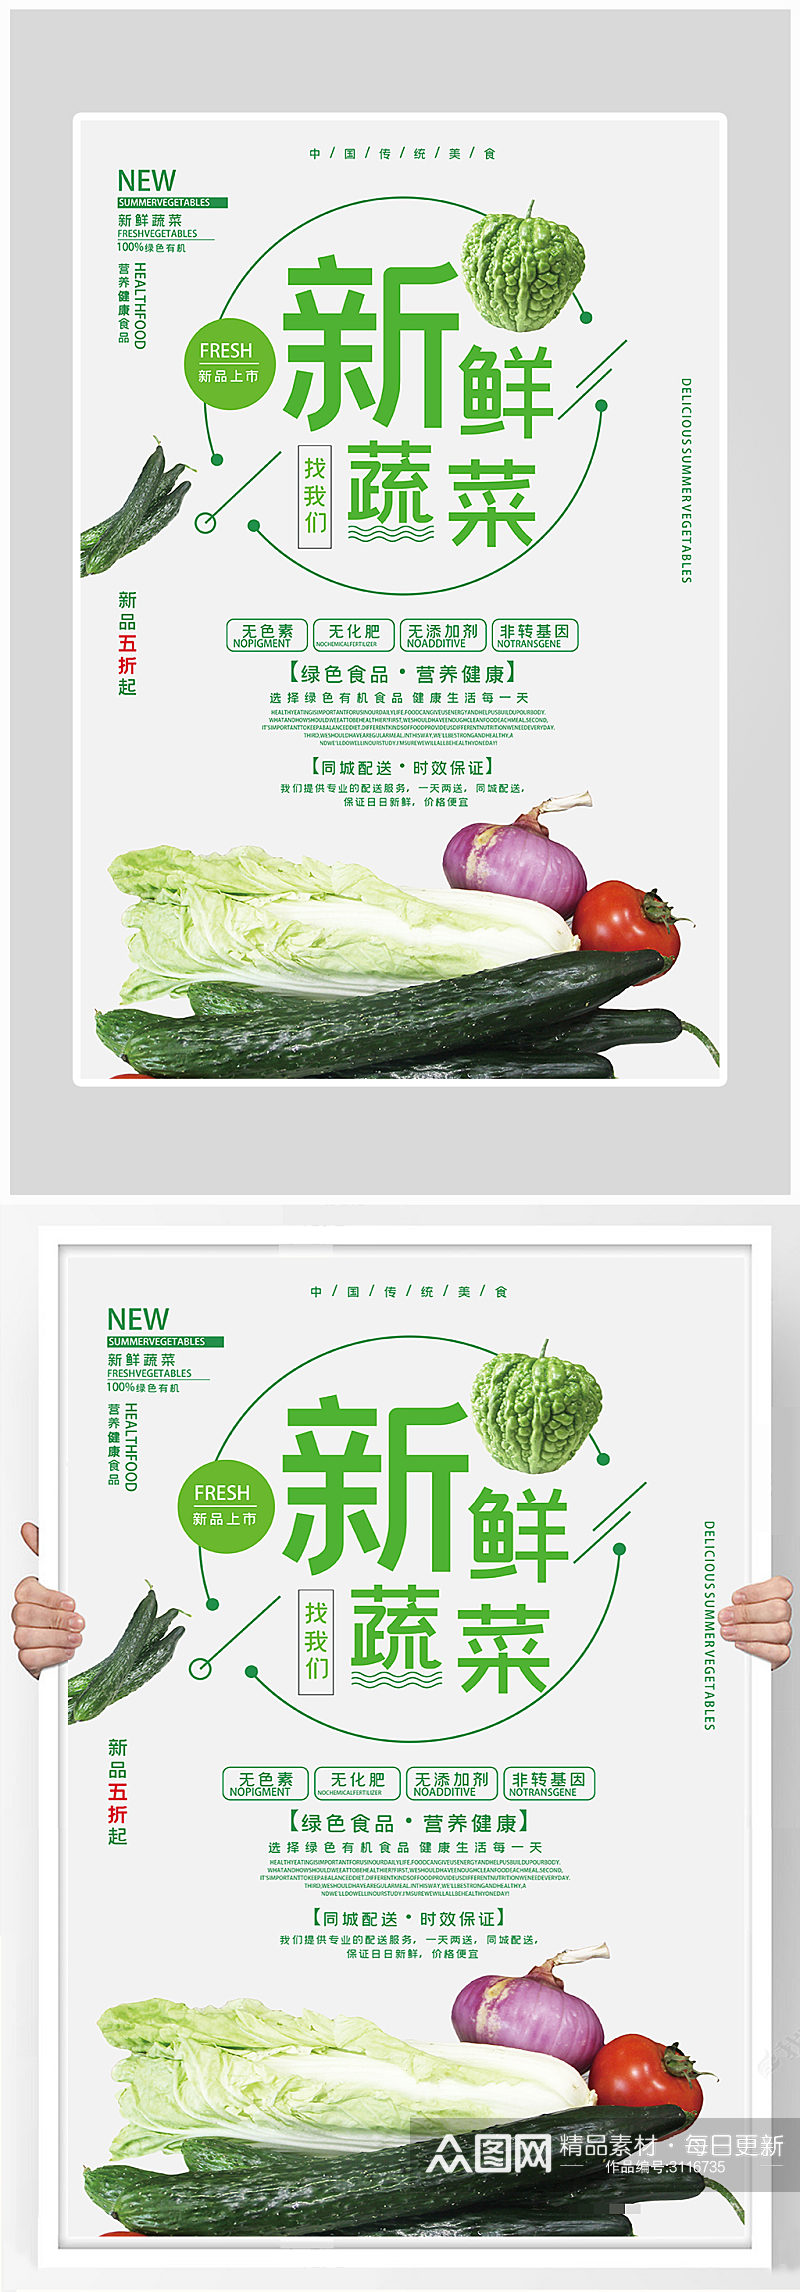 创意简约健康新鲜蔬菜海报设计素材